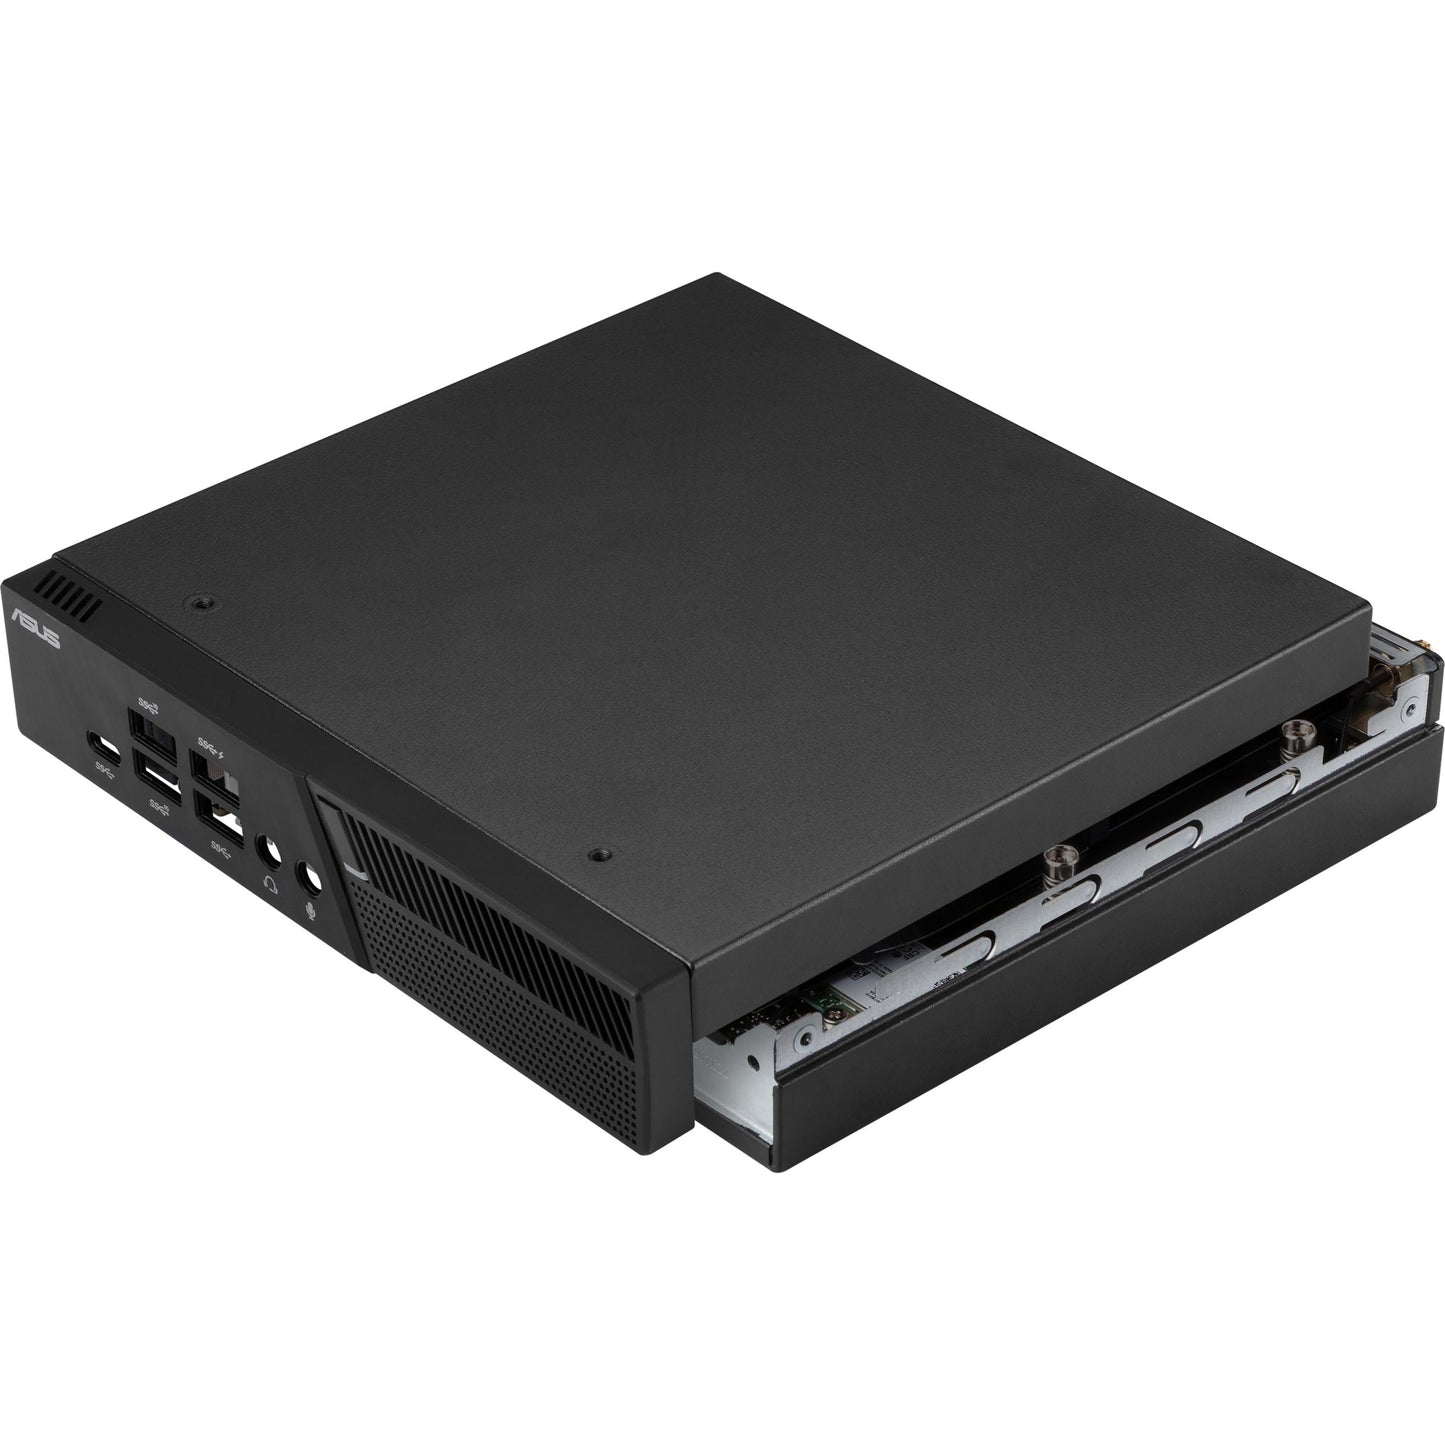 Asus miniPC PB60-B3041ZC Desktop Computer - Intel DDR4 SDRAM - Mini PC - Black